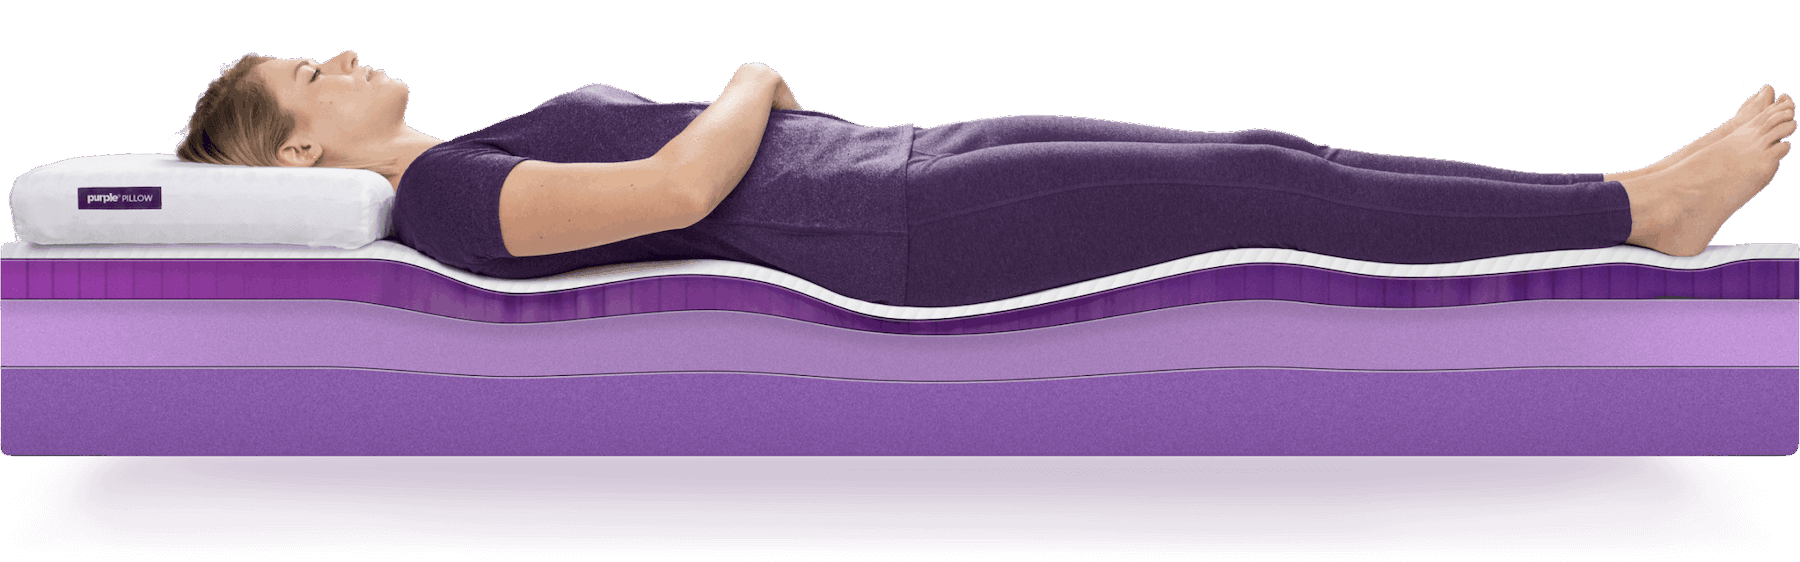 Best King Mattress Purple, Purple King Size Bed